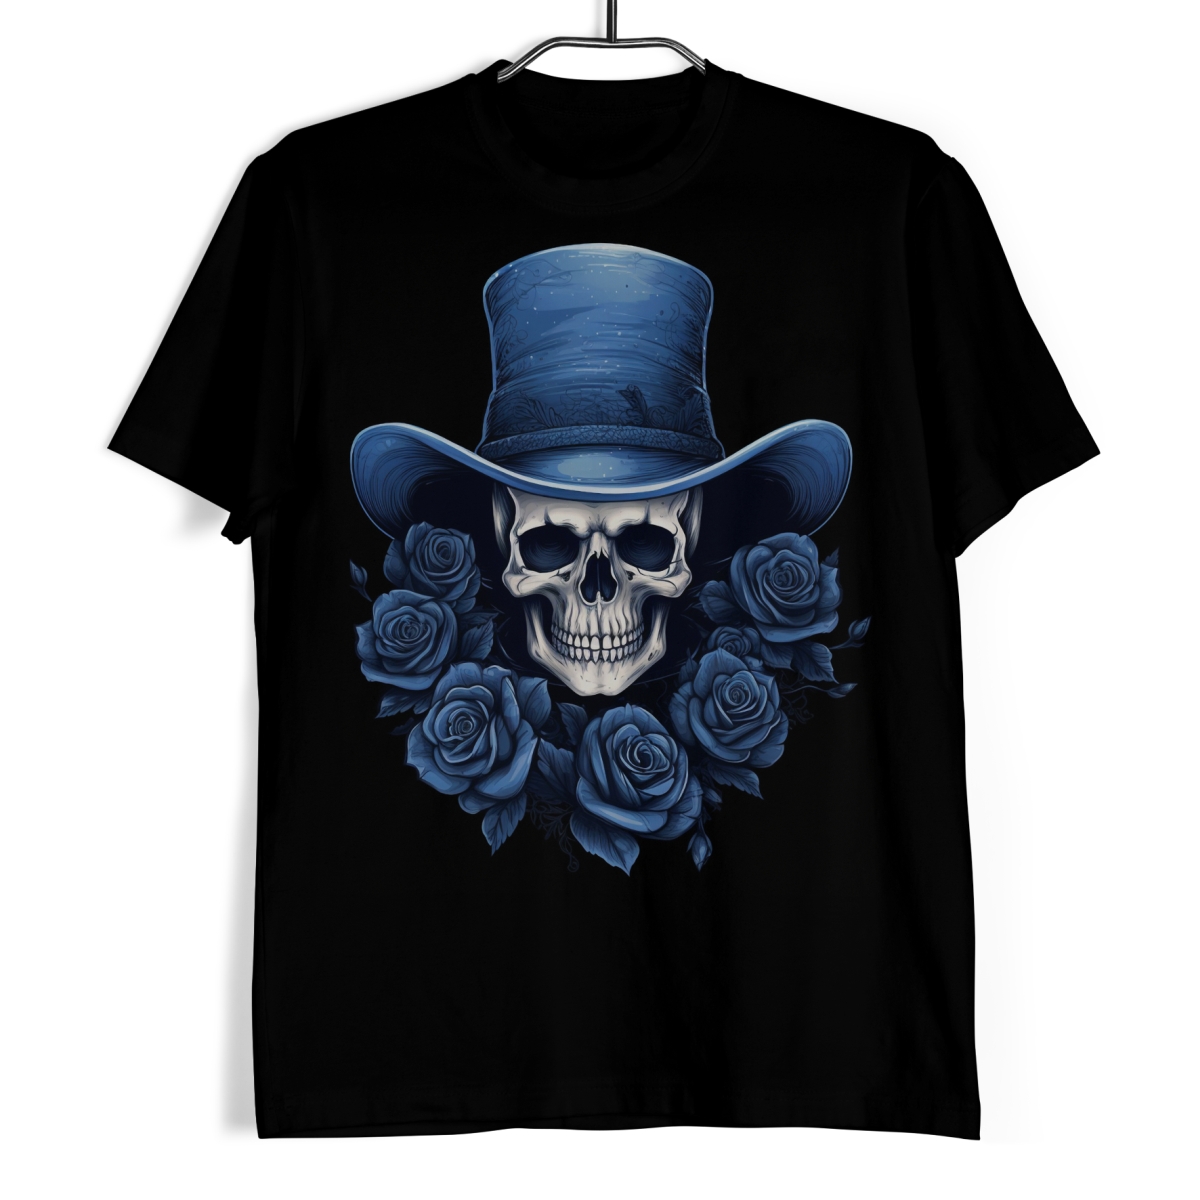 Tričko s lebkou - Modrý cylindr a růže S